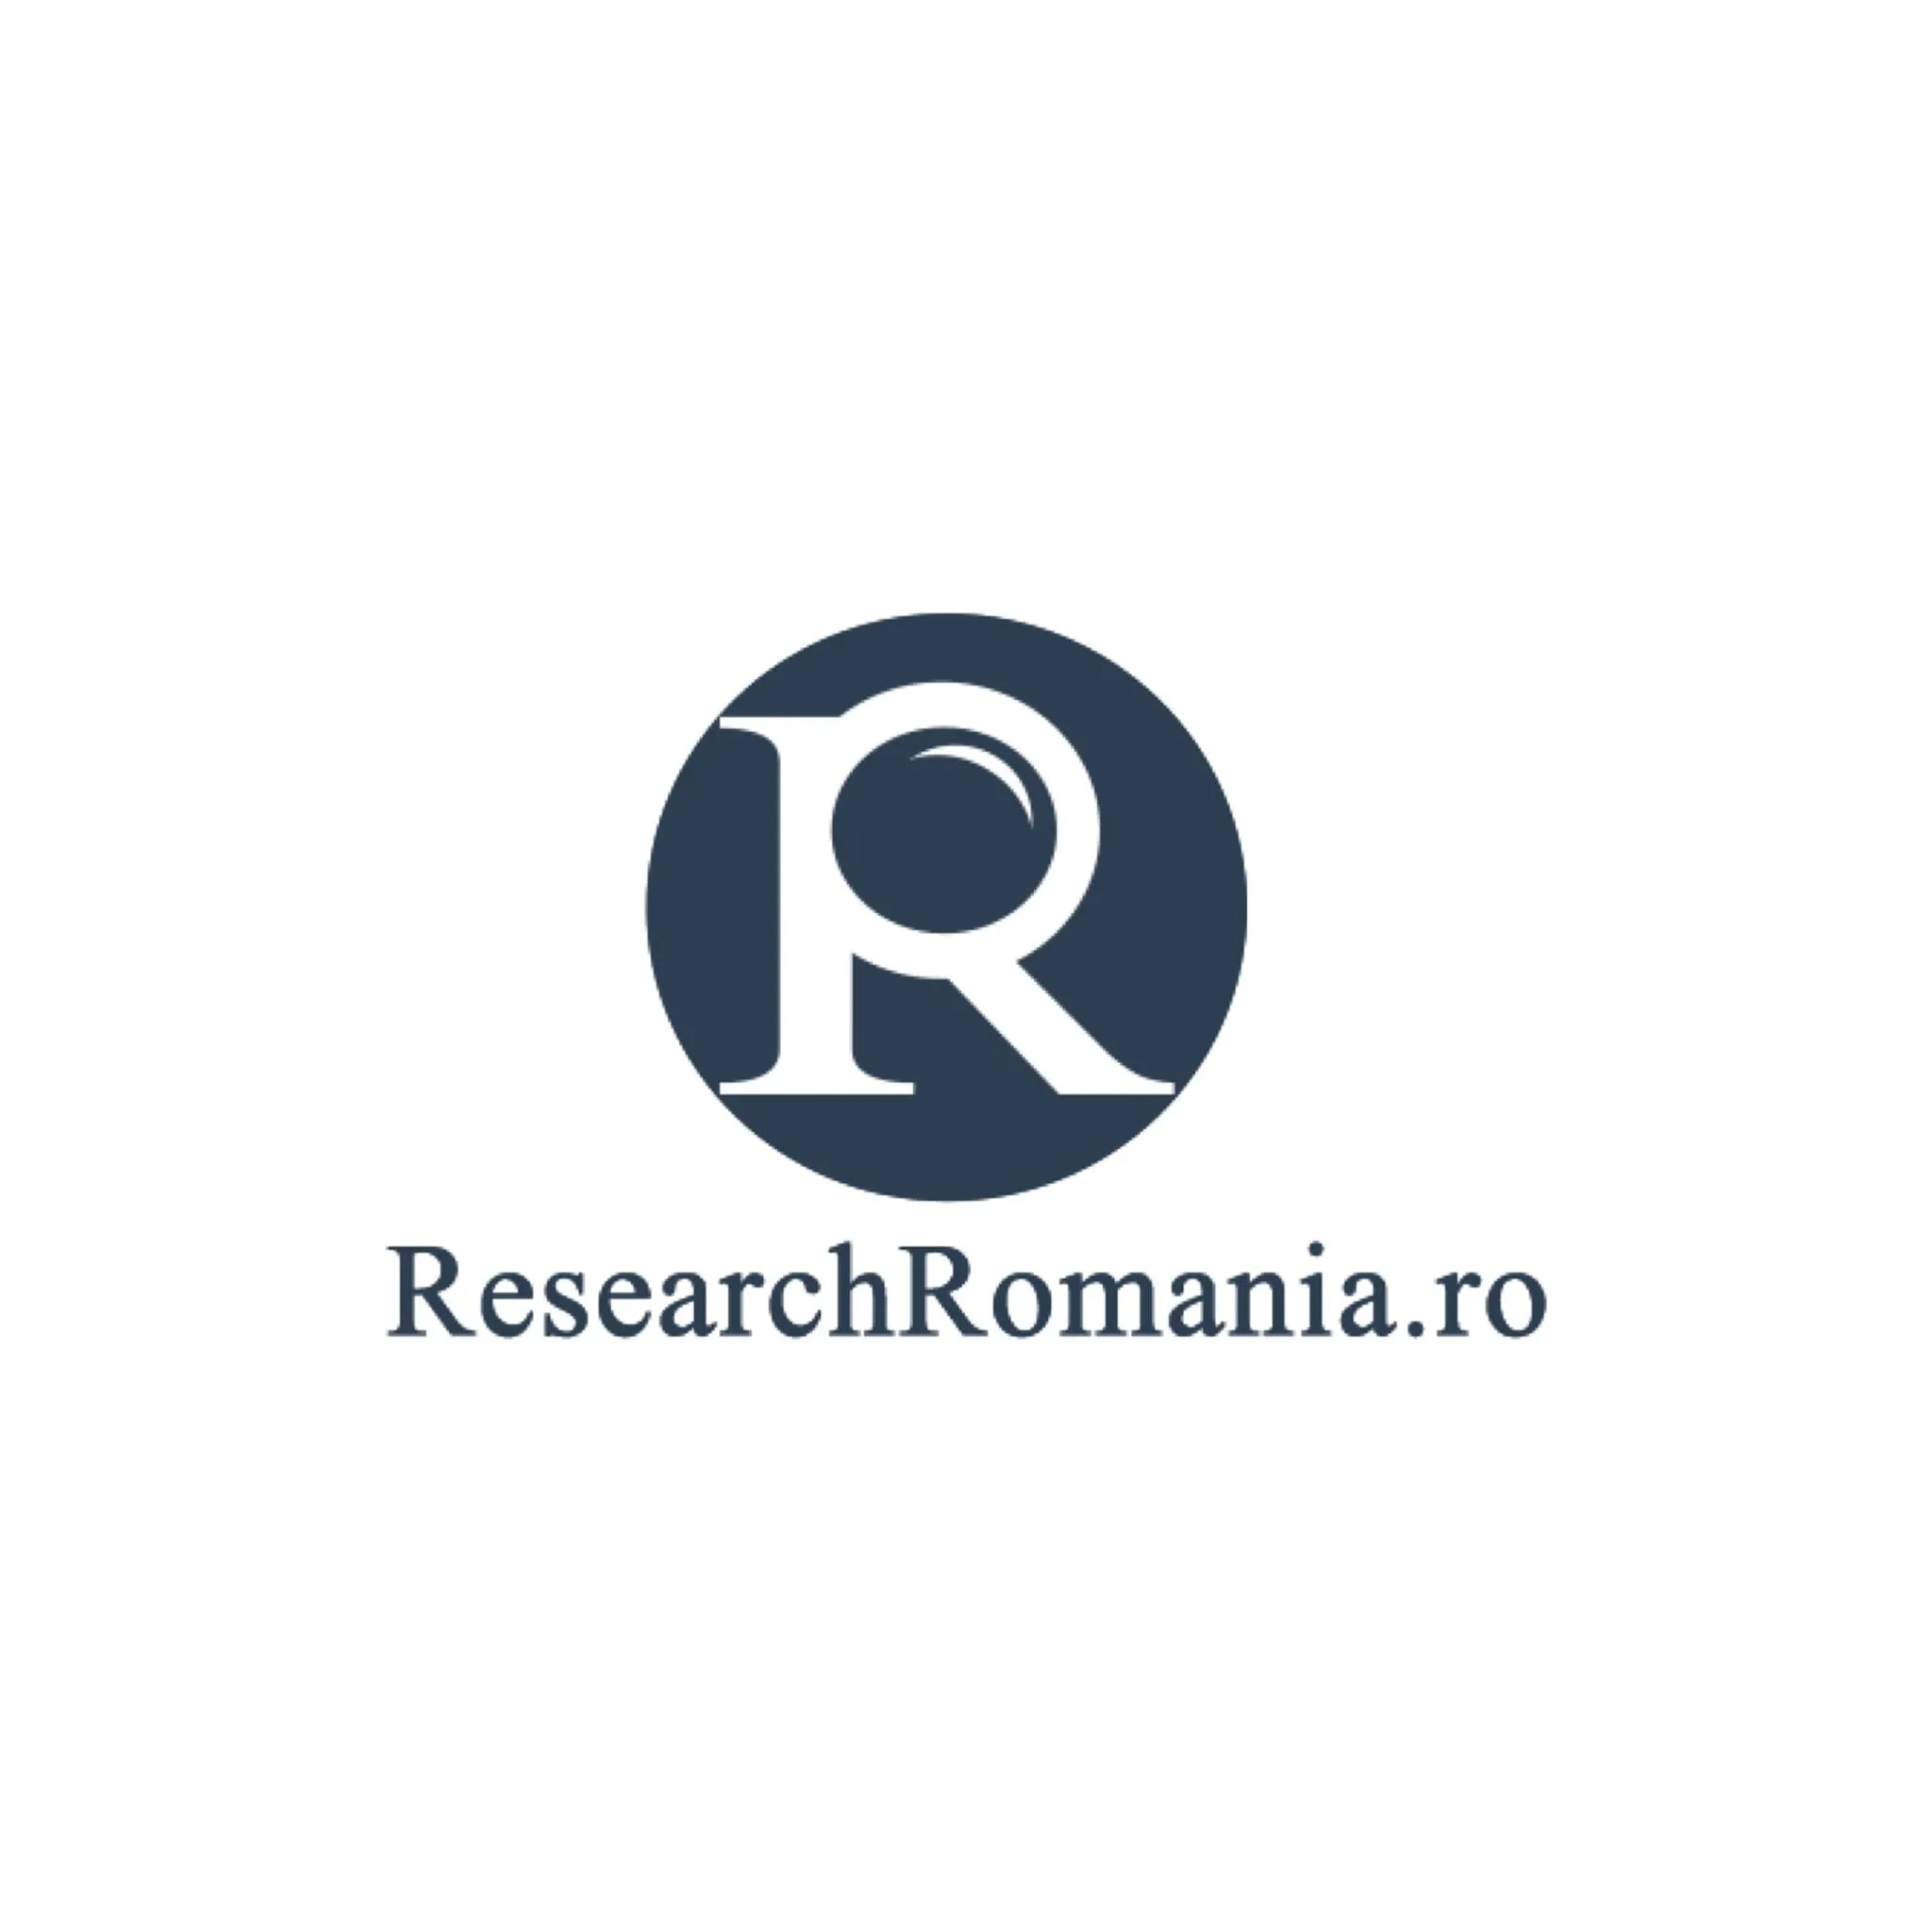 ResearchRomania cod reducere